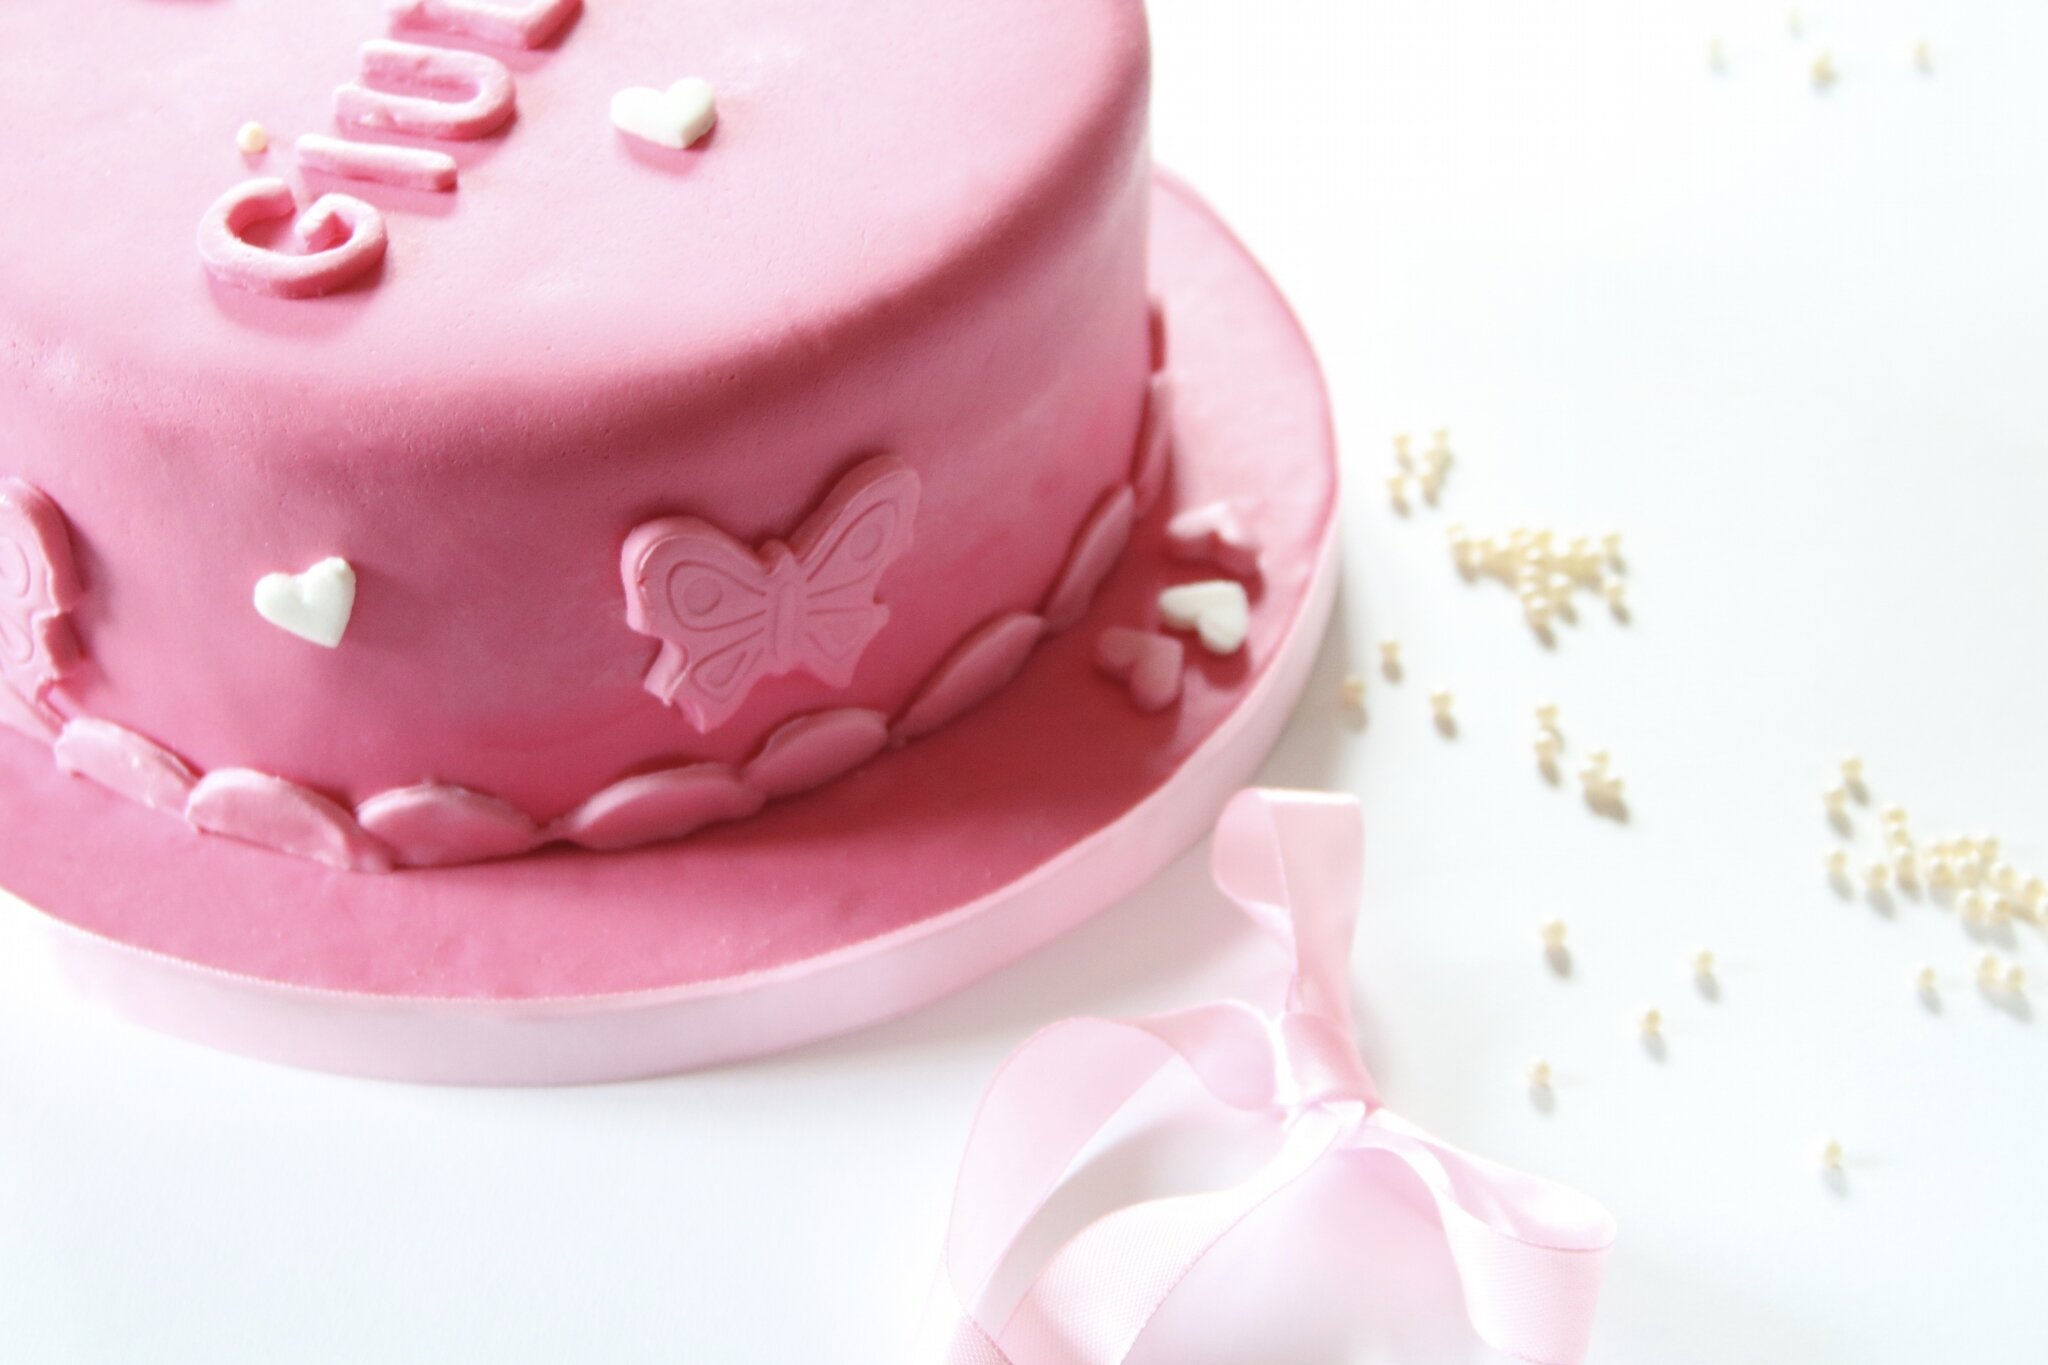 Des gâteaux pour toutes les occasions: mariage, anniversaire, babyshower